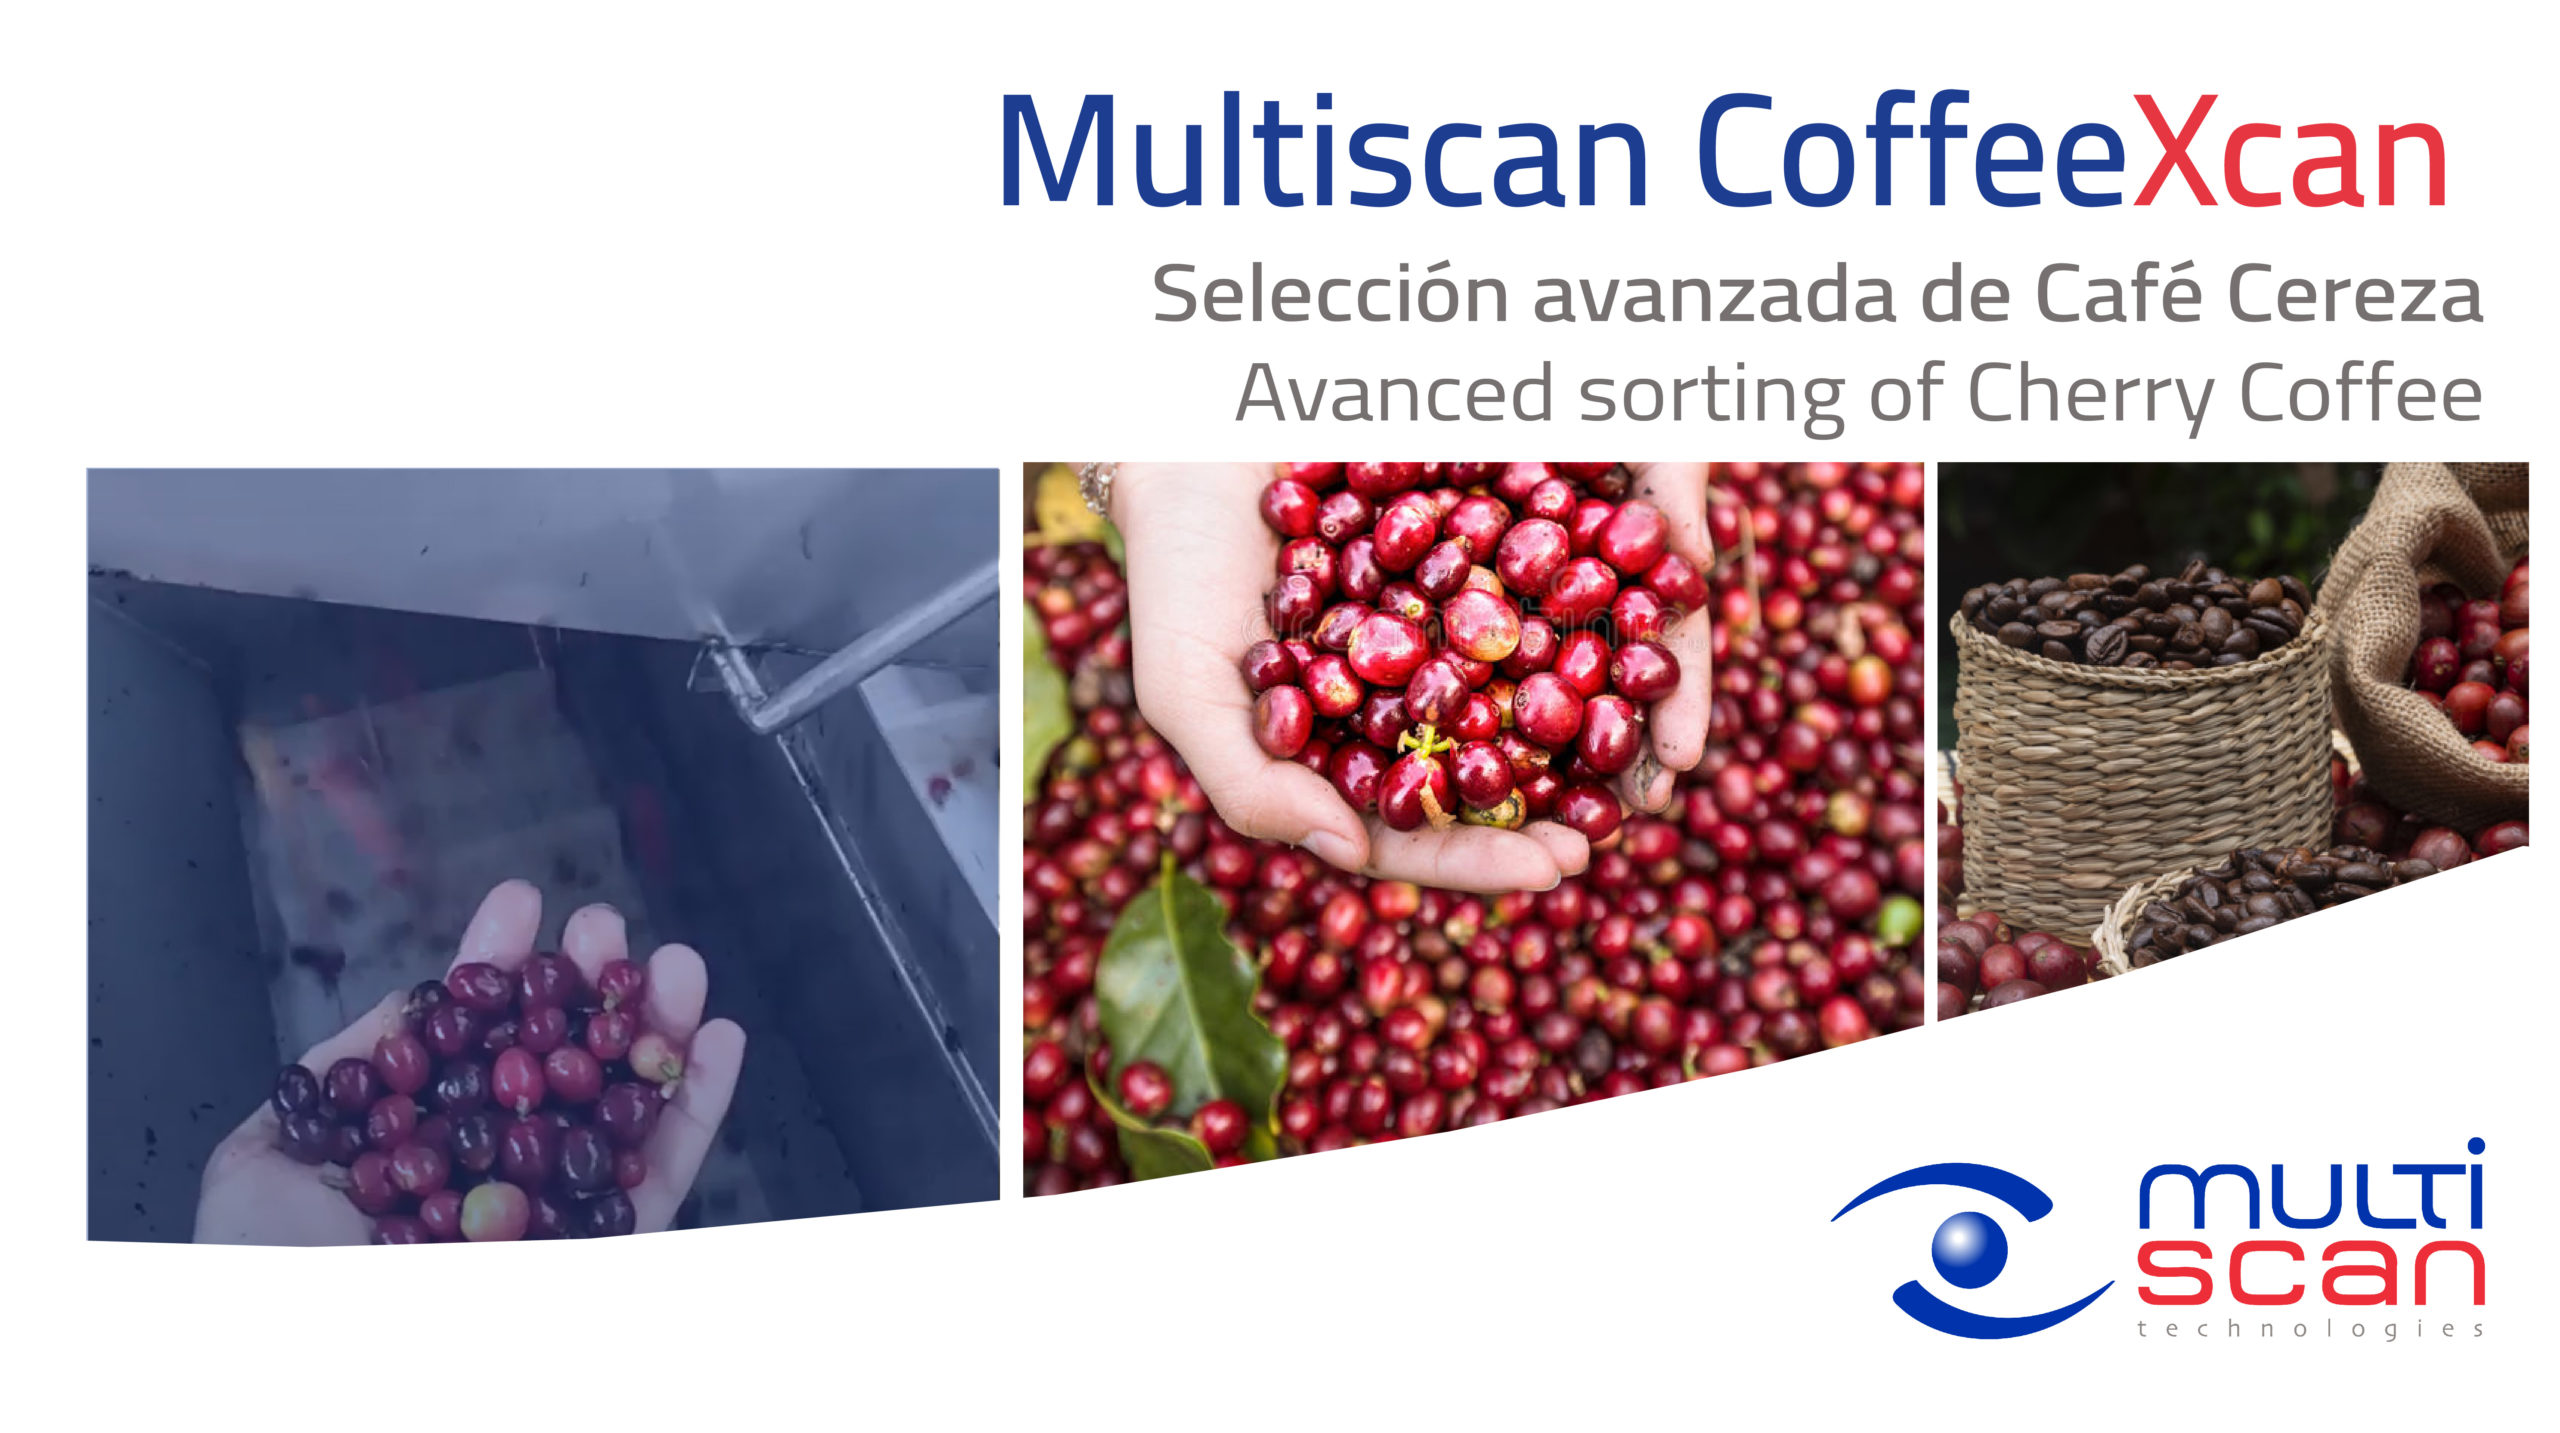 Multiscan CoffeeXcan, solución avanzada para la selección de café cereza